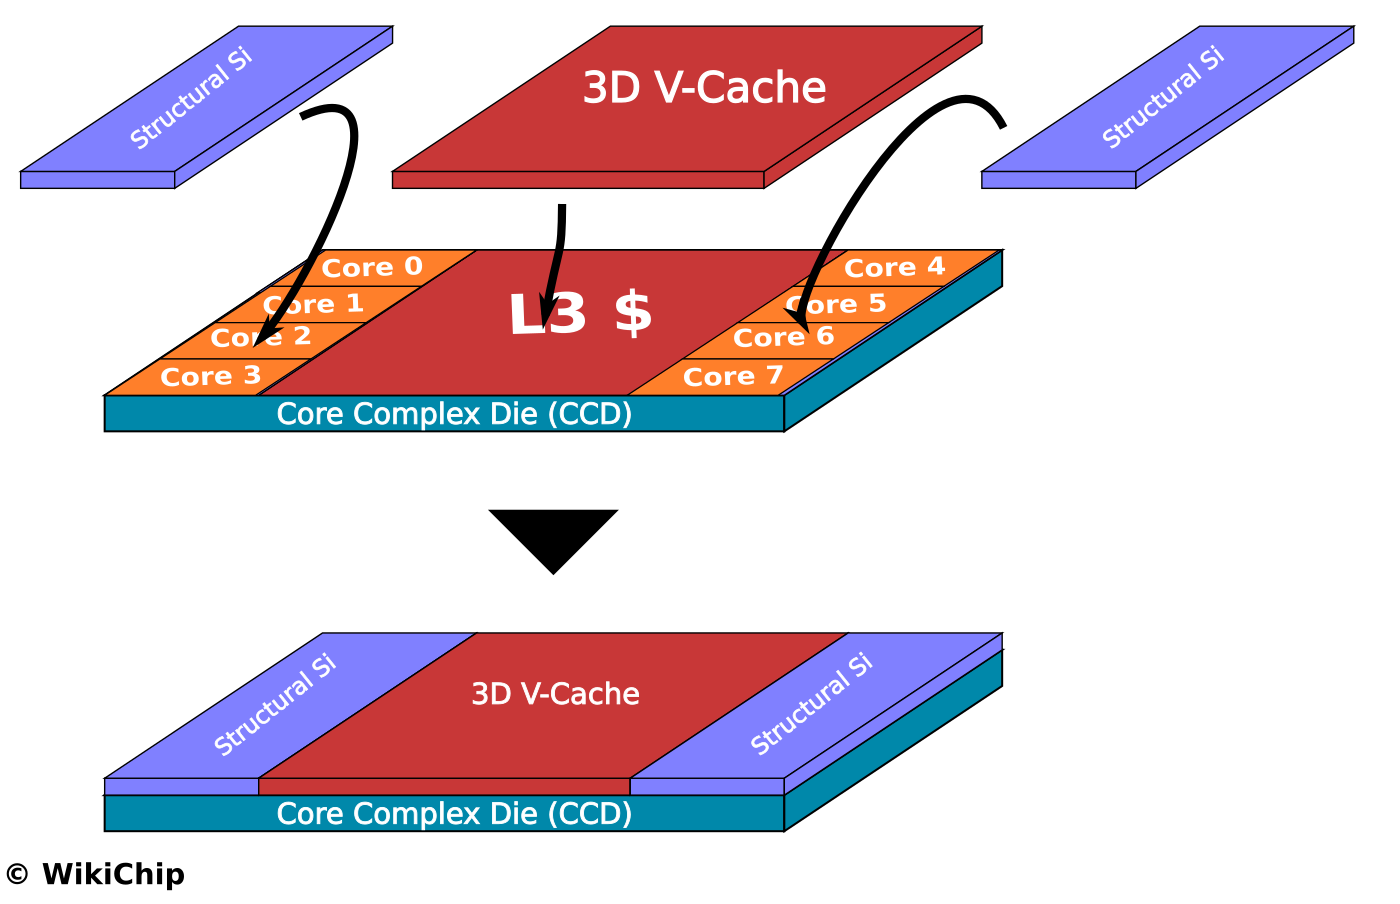 mise en œuvre du SoIC pour les premier CPU 3D de chez AMD